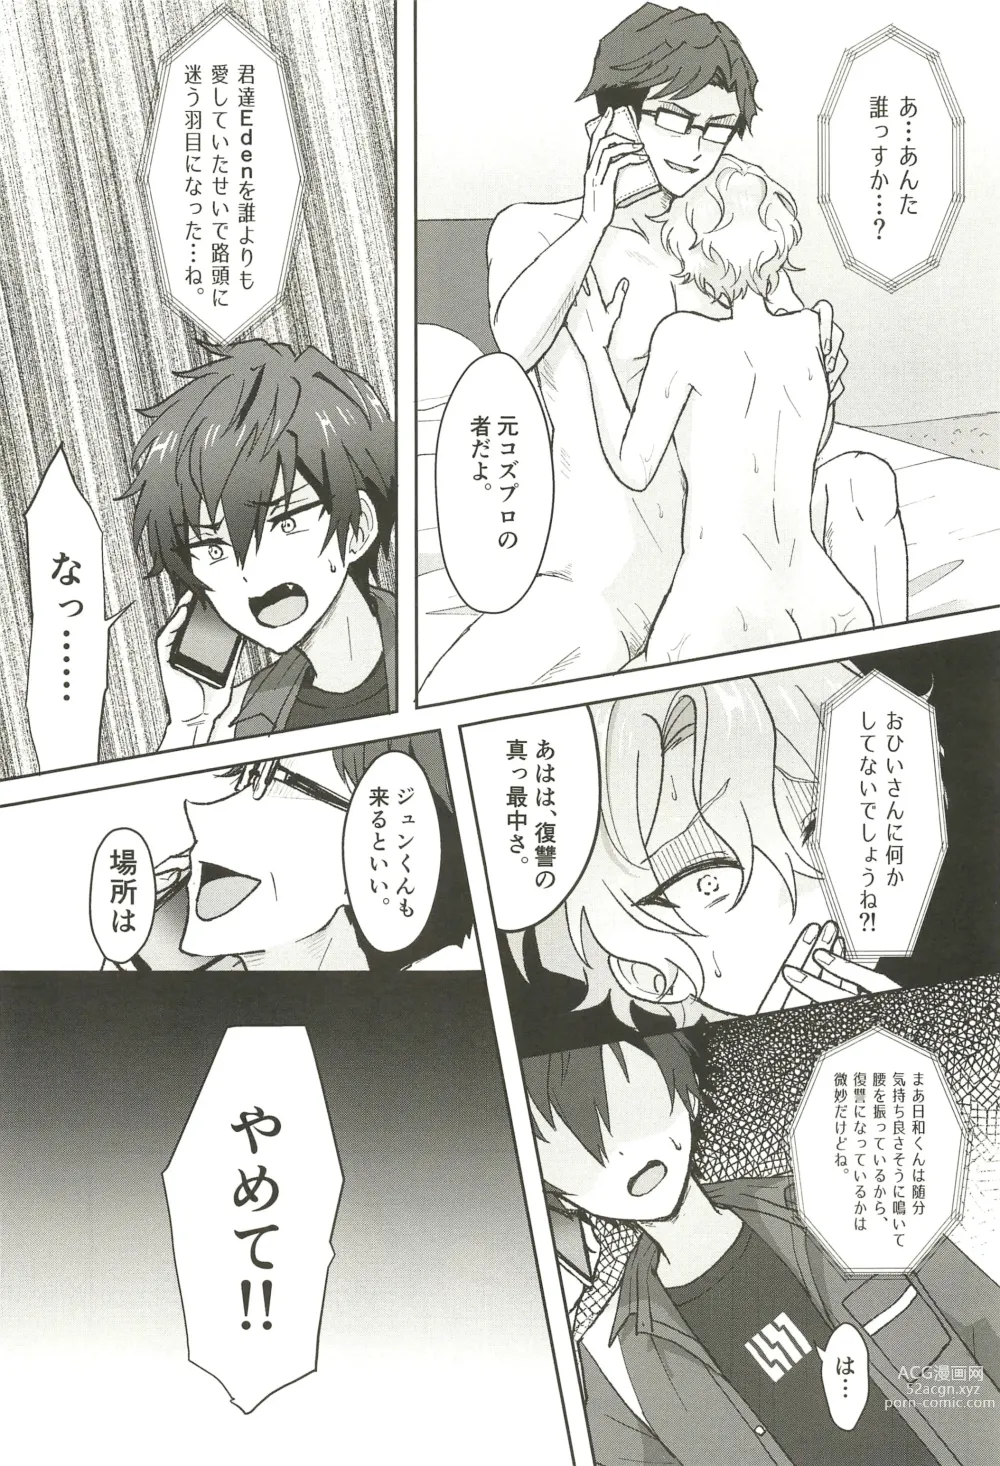 Page 61 of doujinshi Ochiru.